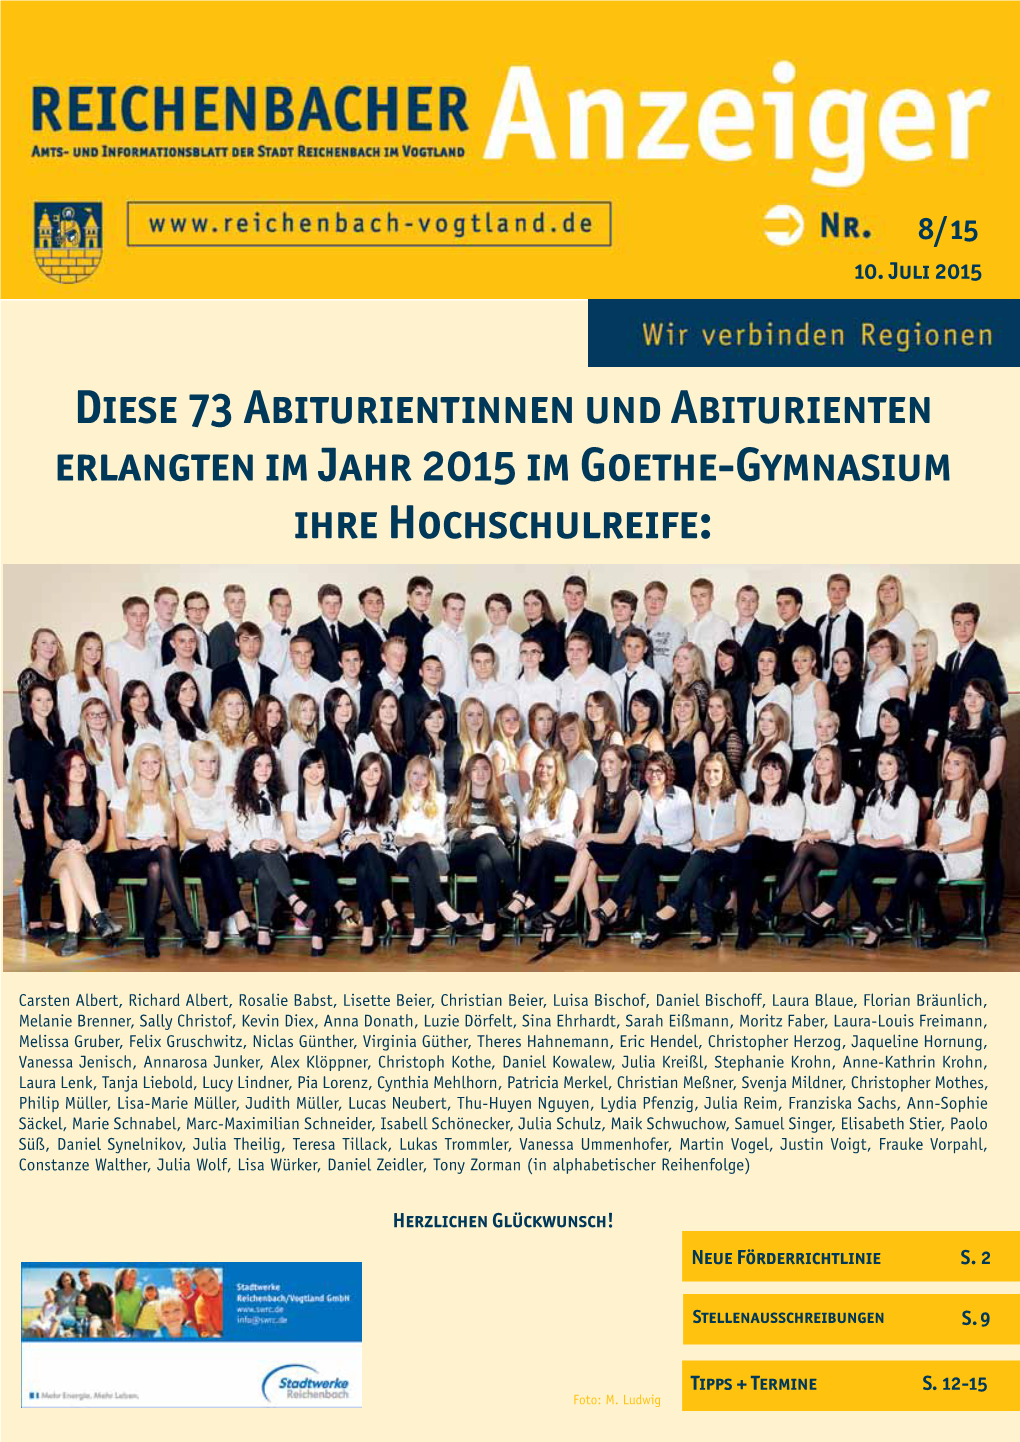 Diese 73 Abiturientinnen Und Abiturienten Erlangten Im Jahr 2015 Im Goethe-Gymnasium Ihre Hochschulreife